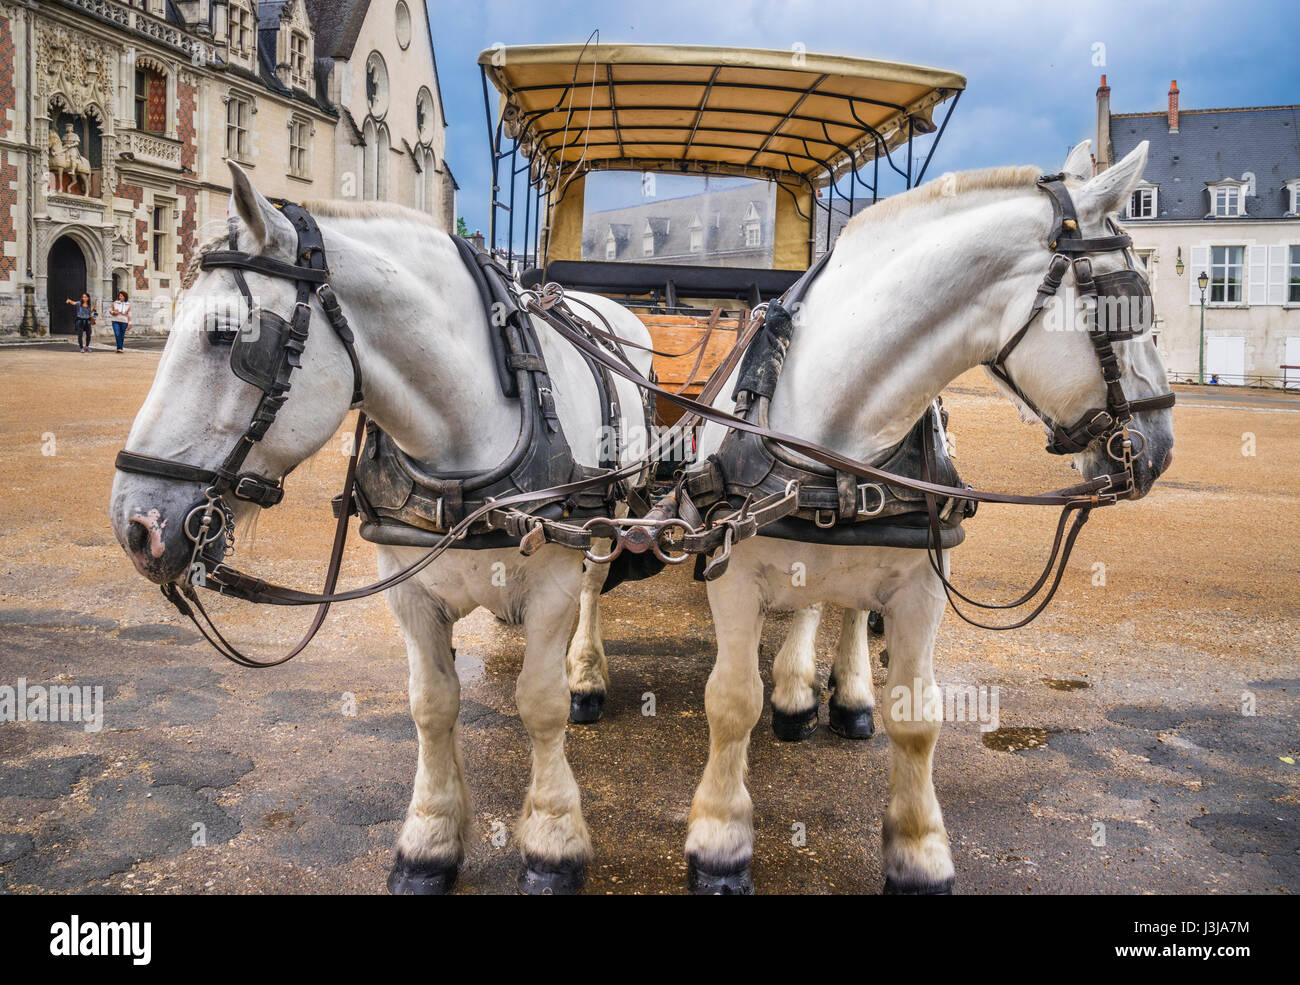 France, Centre-Val de Loire, Chateau de Blois, a team of Percheron draft horses is waiting to cart tourists to the sites of Blois Stock Photo